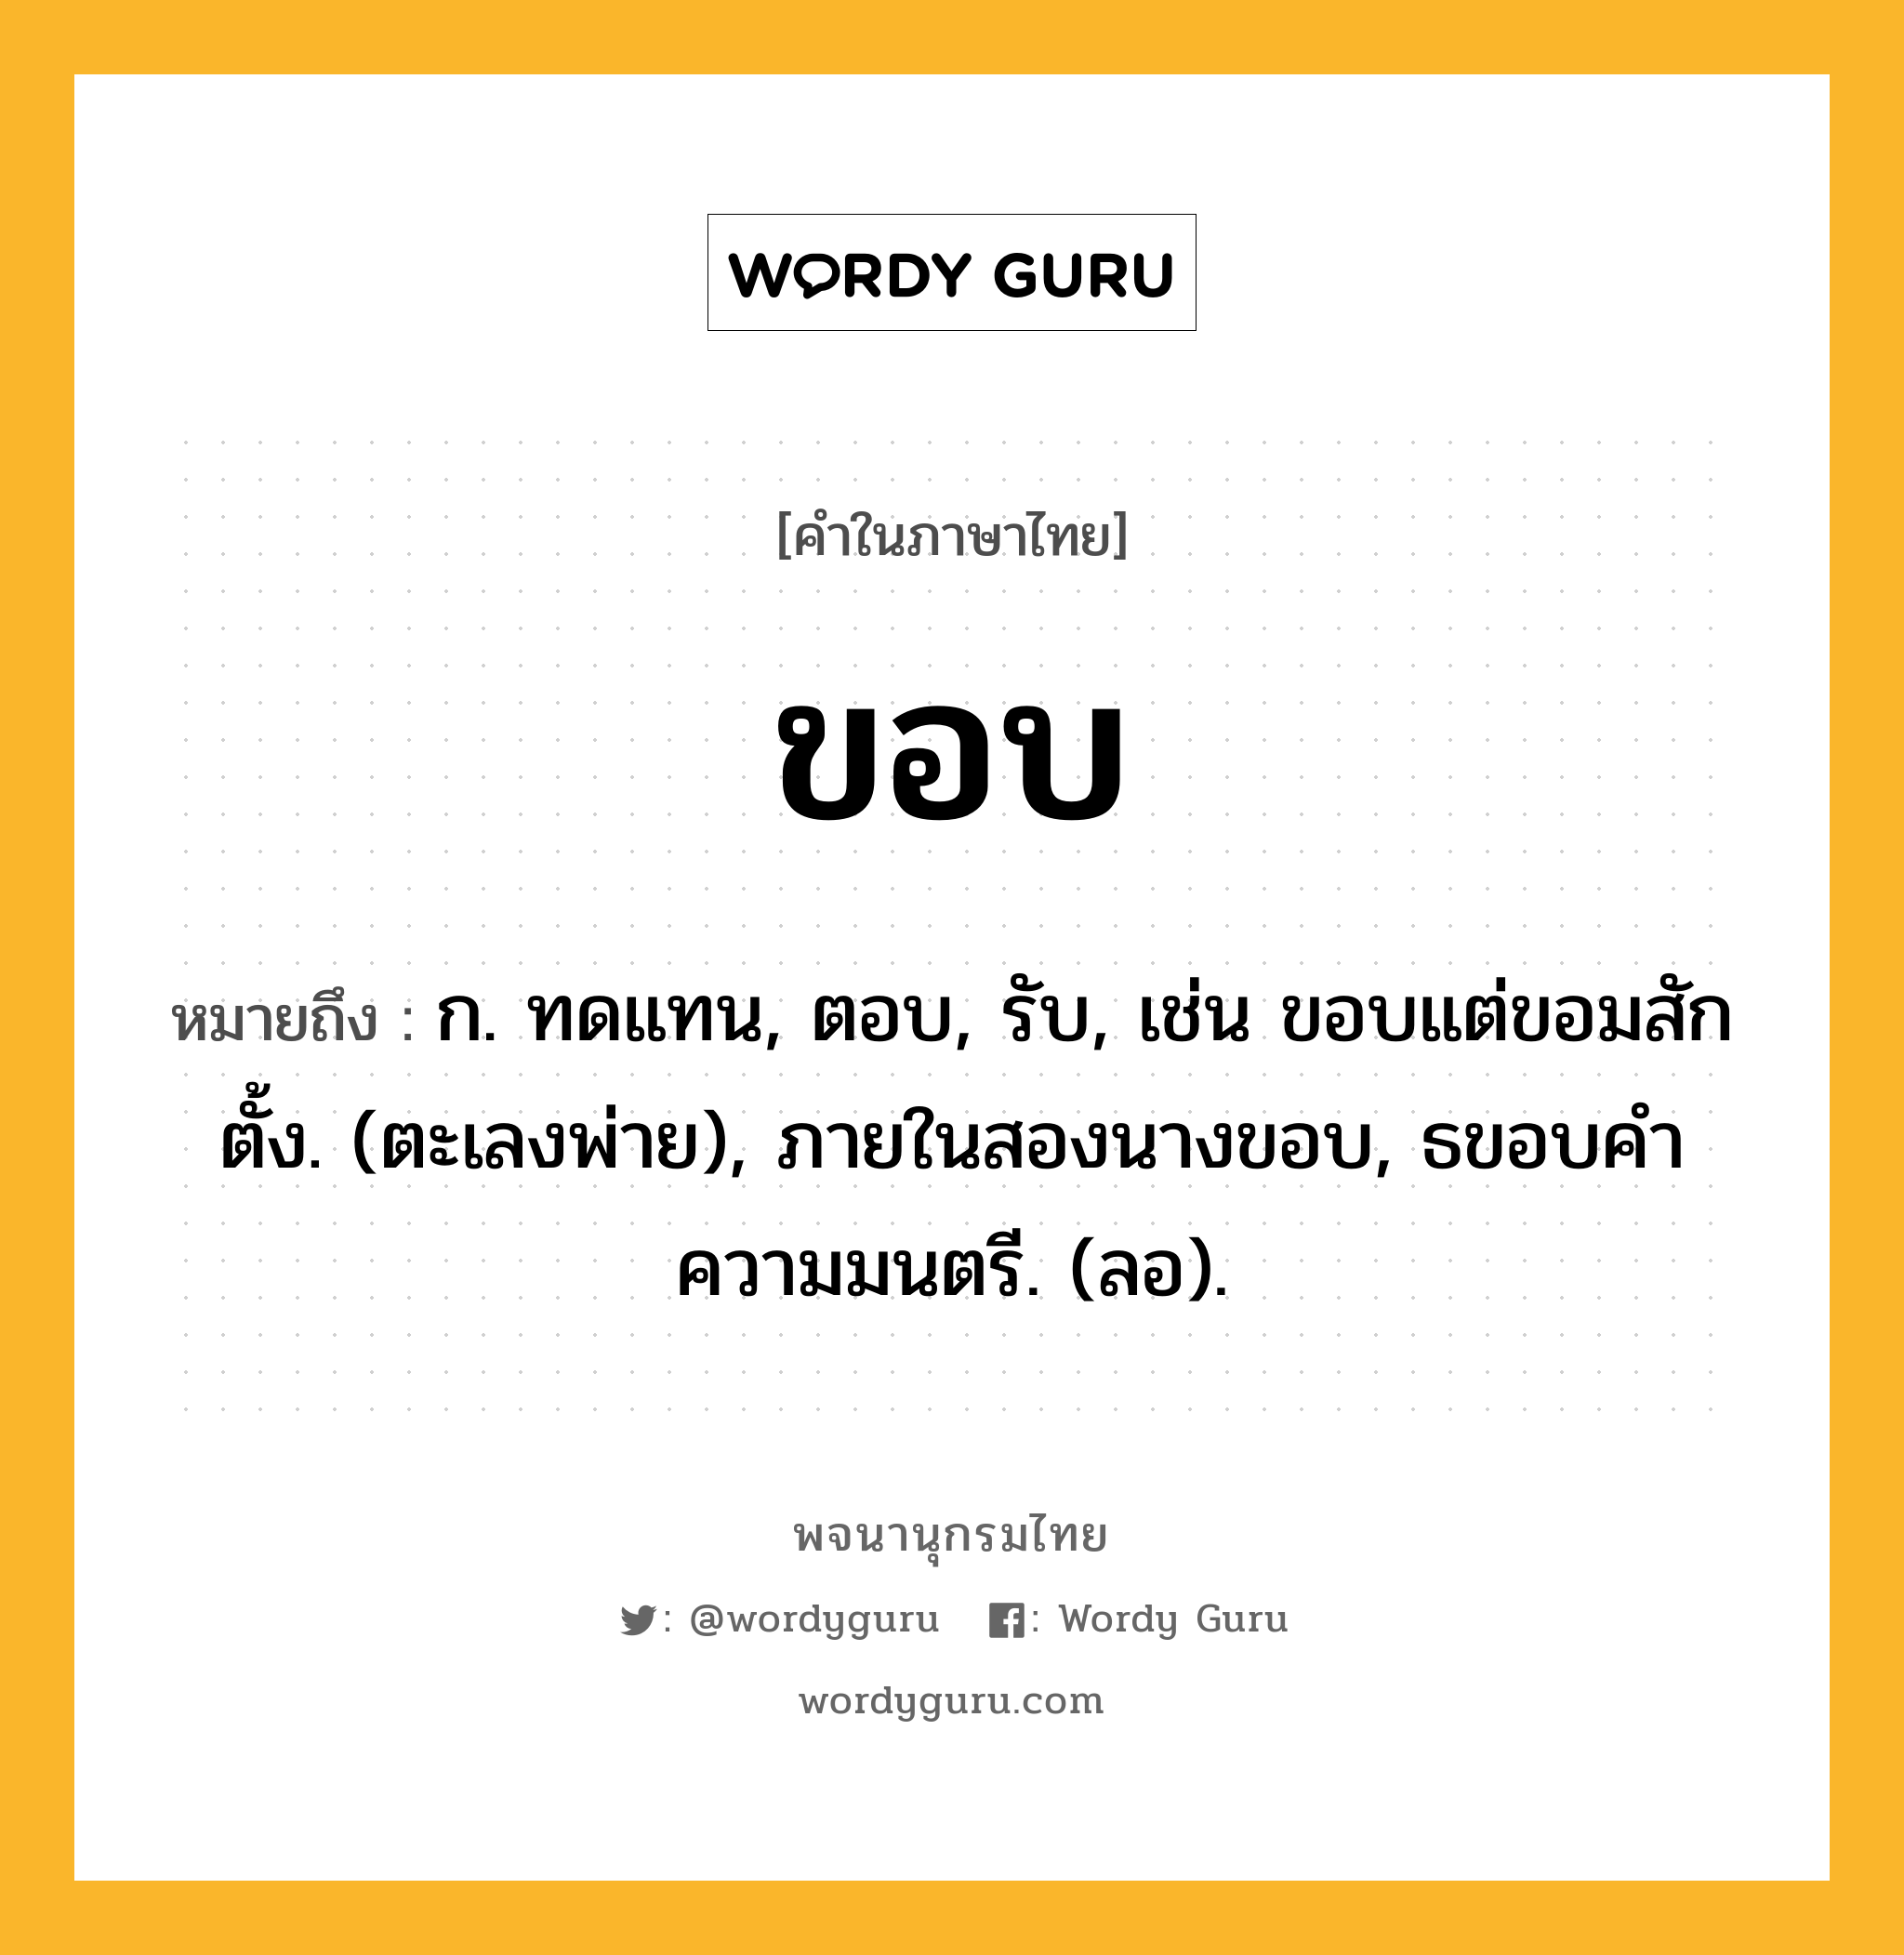 ขอบ หมายถึงอะไร?, คำในภาษาไทย ขอบ หมายถึง ก. ทดแทน, ตอบ, รับ, เช่น ขอบแต่ขอมสักตั้ง. (ตะเลงพ่าย), ภายในสองนางขอบ, ธขอบคําความมนตรี. (ลอ).